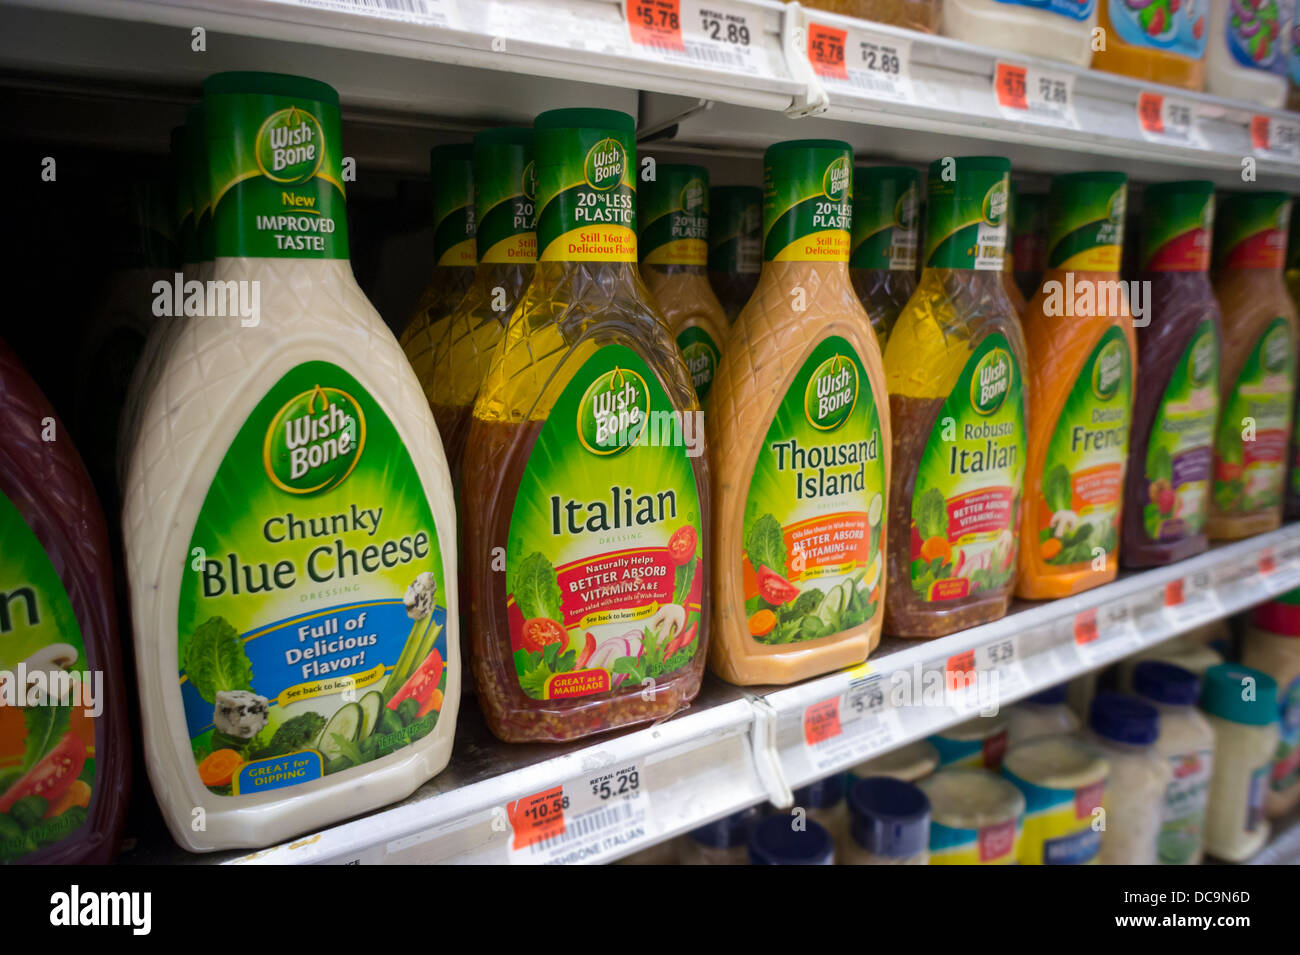 Wish-Bone-Salat-Dressing Flaschen sind auf einem Supermarktregal in New York gesehen. Stockfoto